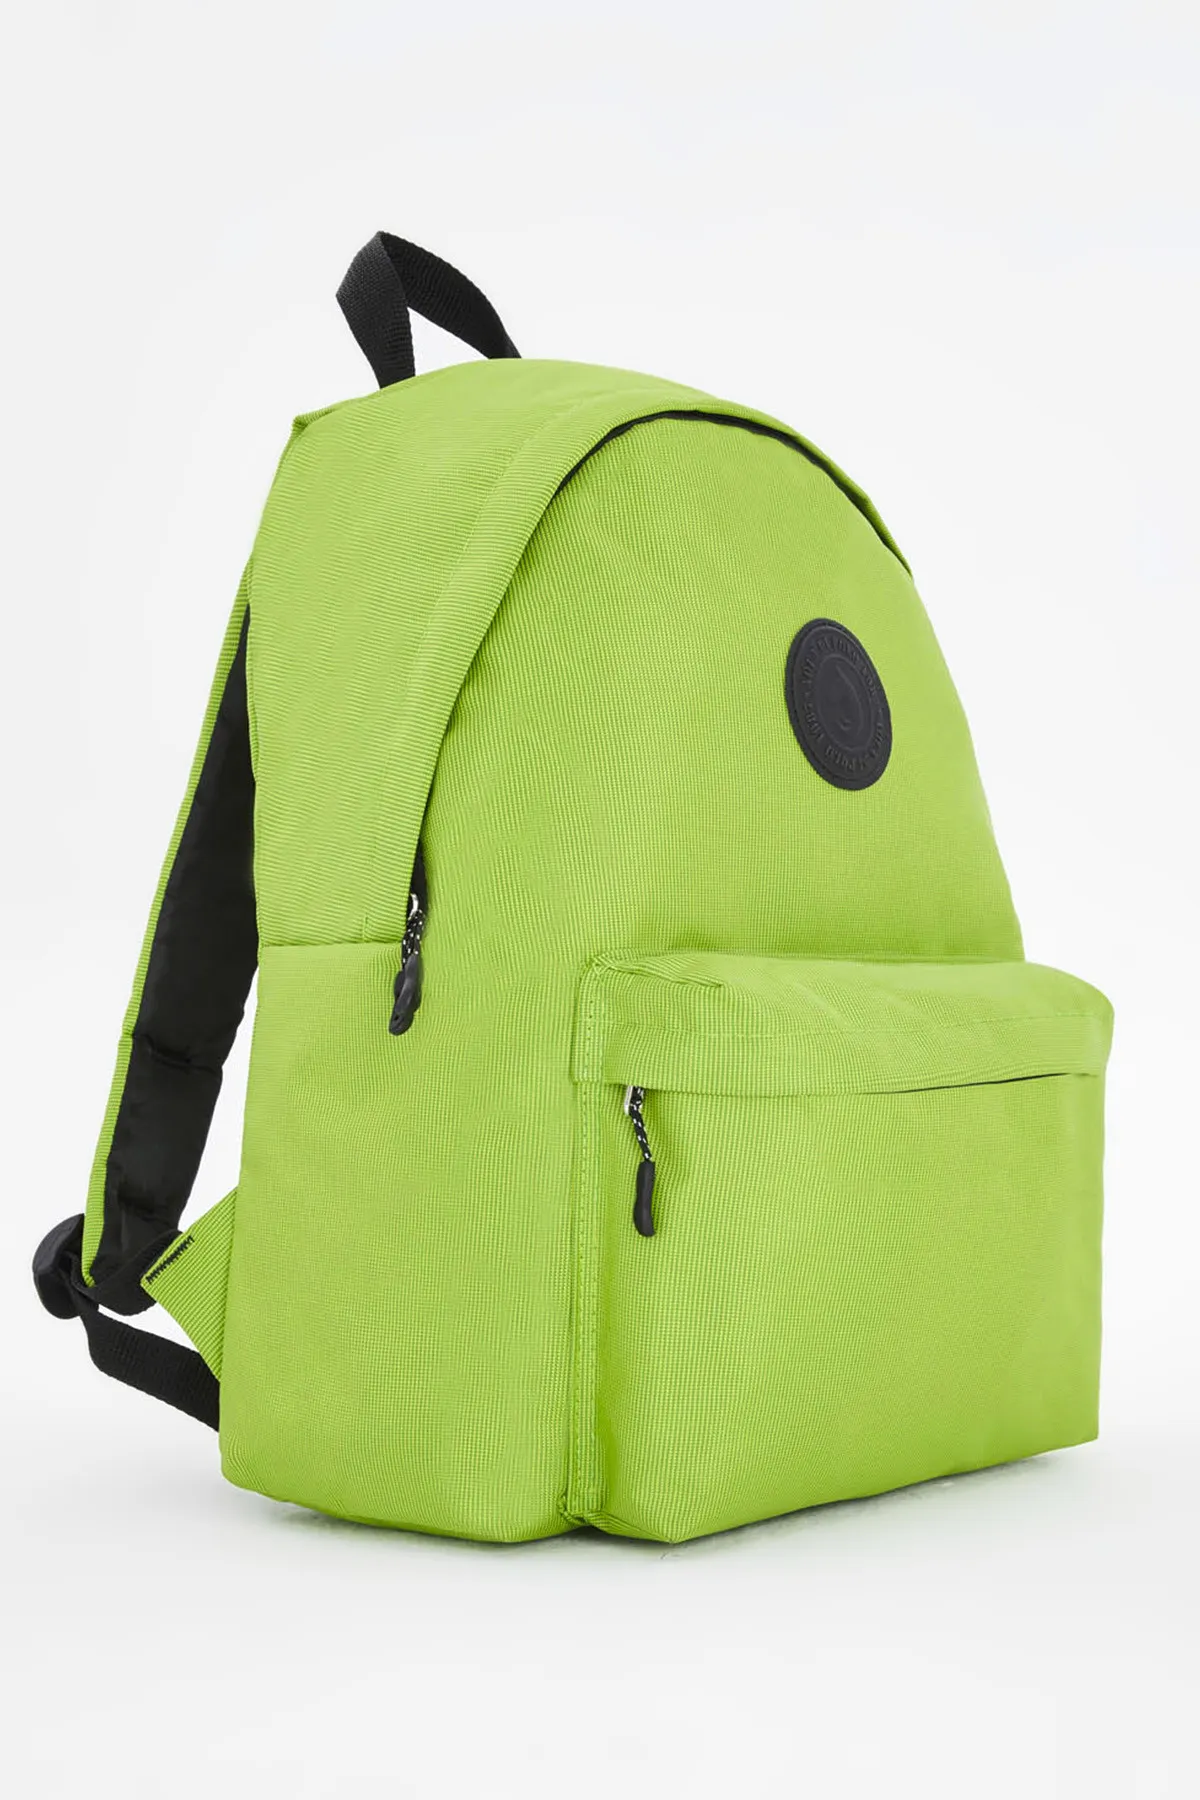 Рюкзак унисекс Di Polo apba0126 зеленый#6